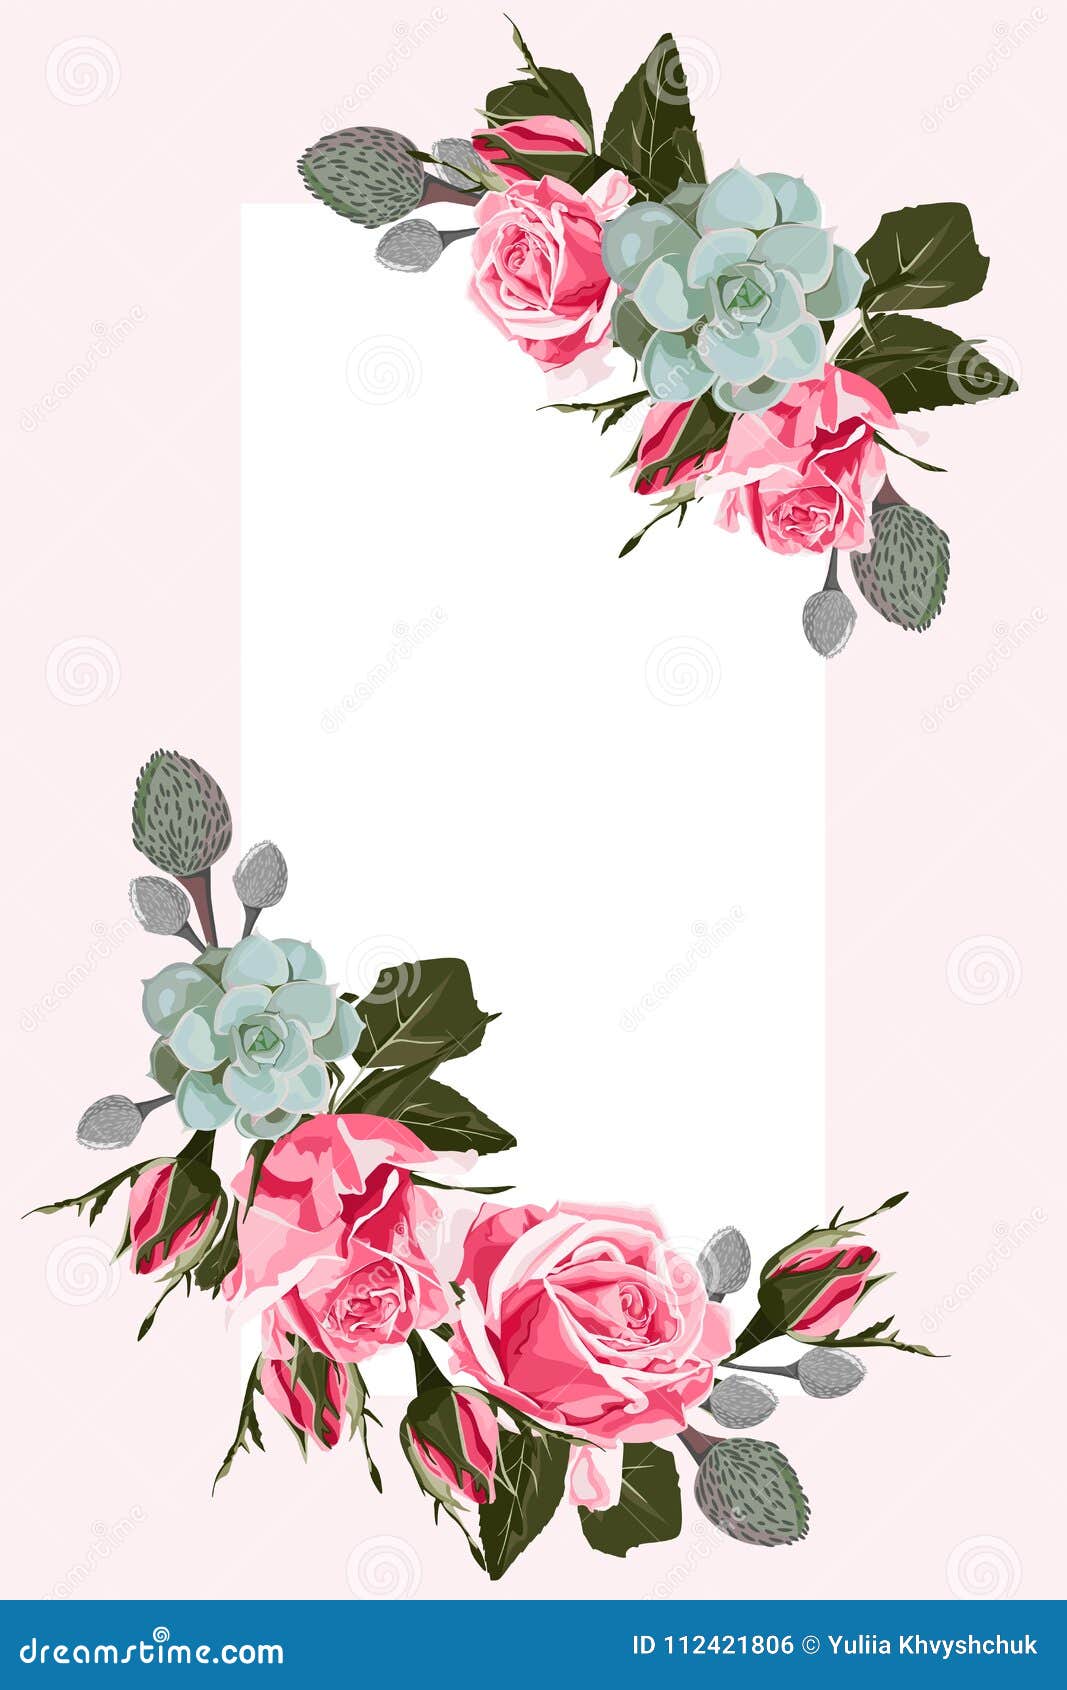 Featured image of post Convite Com Flores Para Editar : Utiliza el cupon envia flores para comprar canastas con chocolates y flores para san valentín o pasteles para cumpleaños.